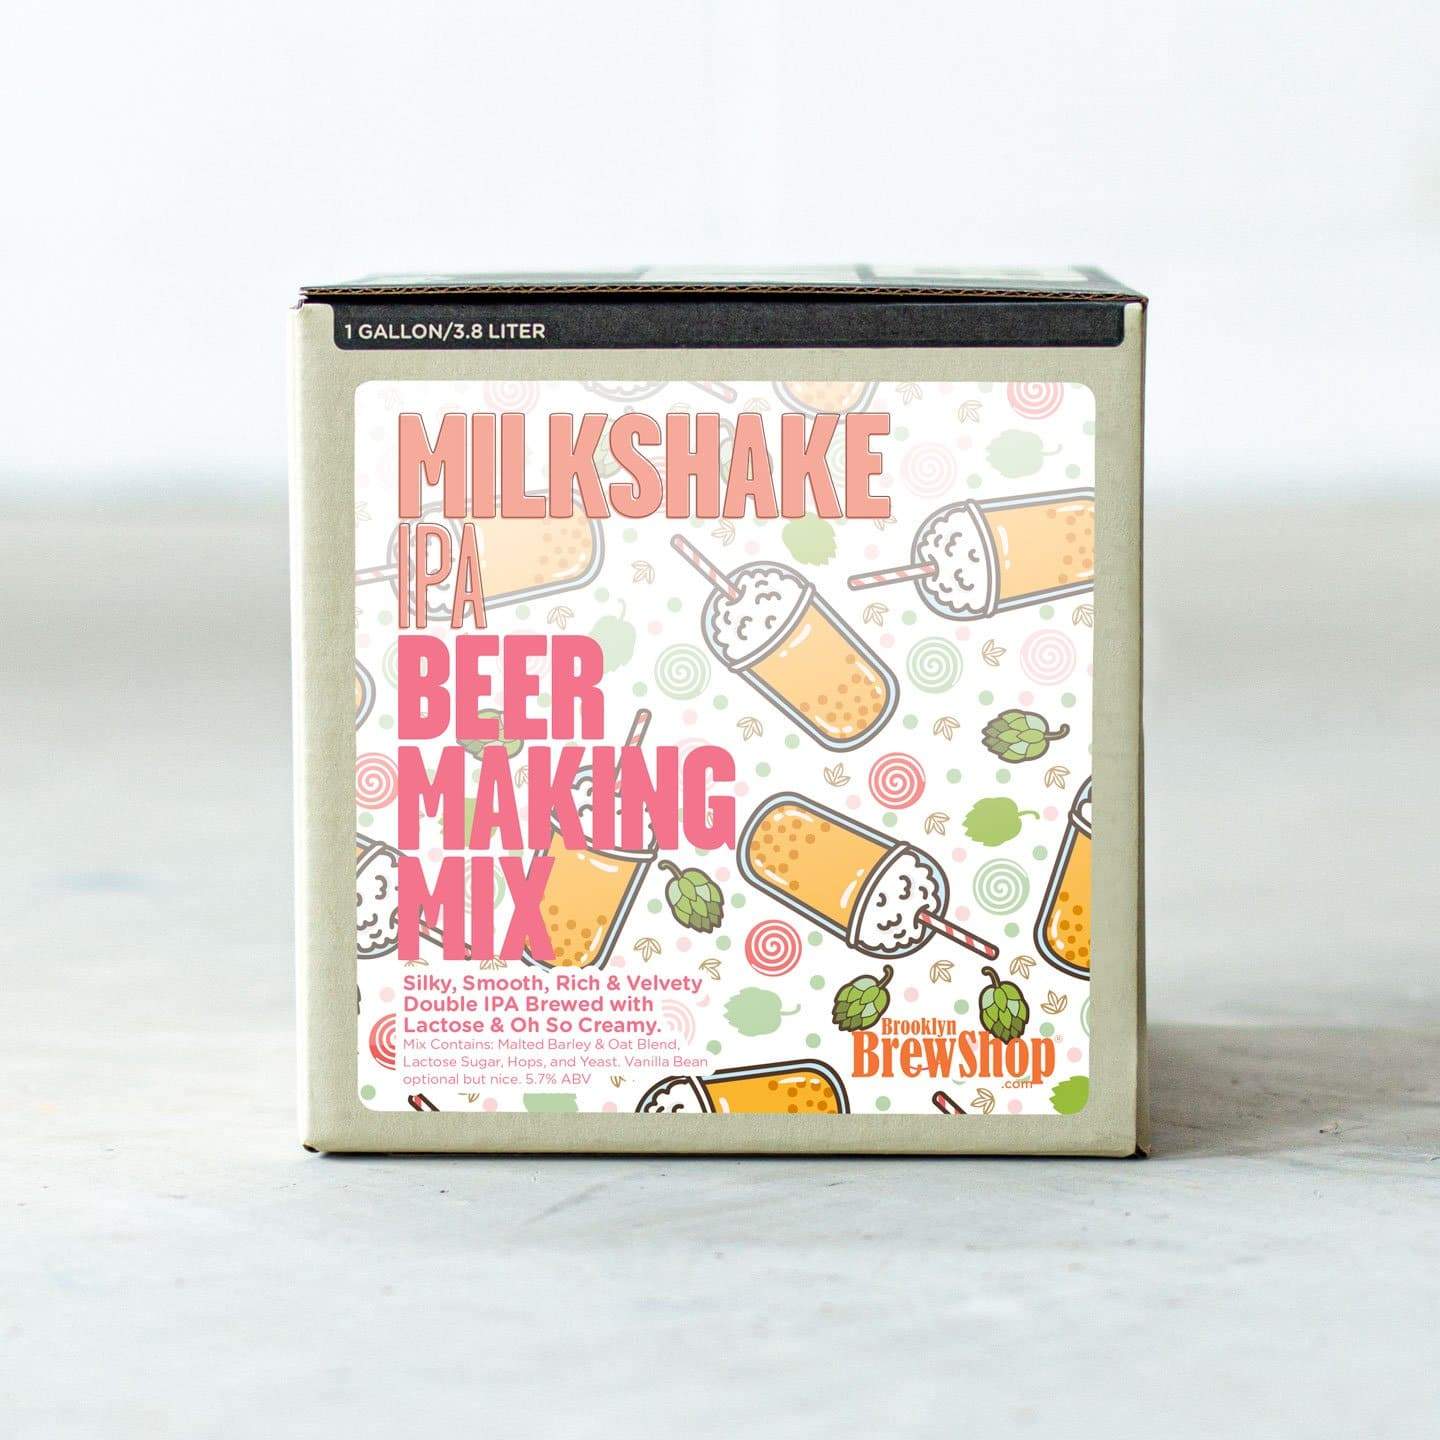 Milkshake IPA: Beer Making Mix